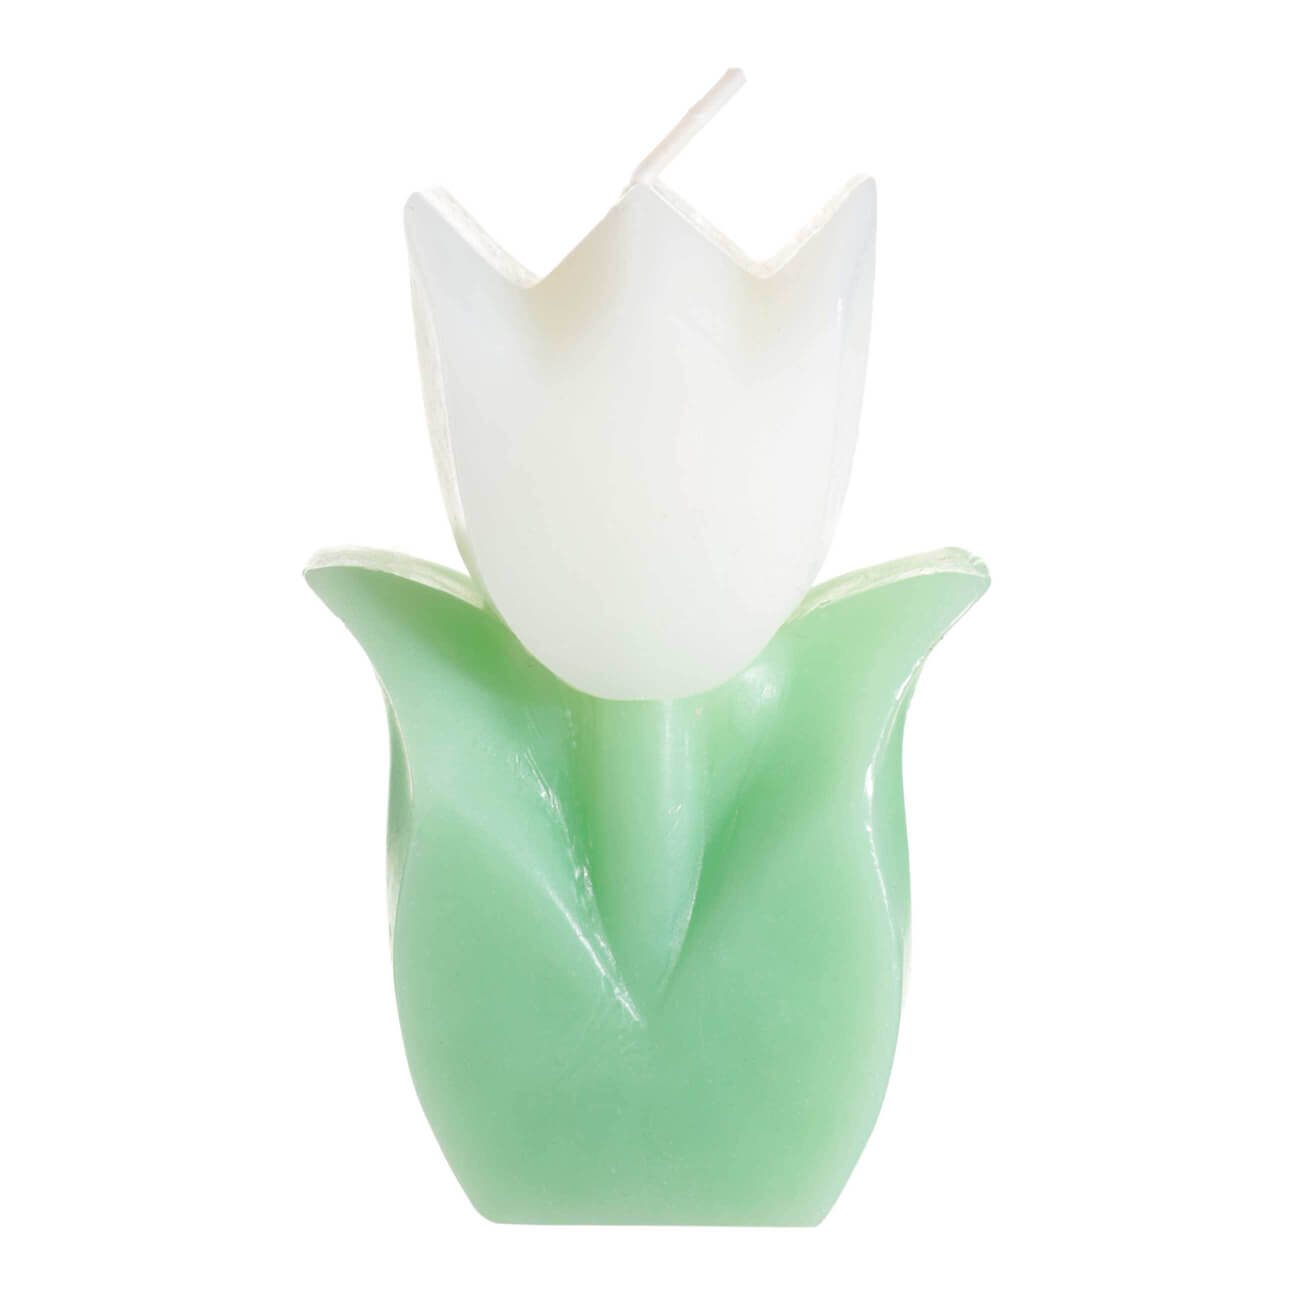 Свеча, 10 см, бело-зеленая, Тюльпан, Tulip garden свеча формовая